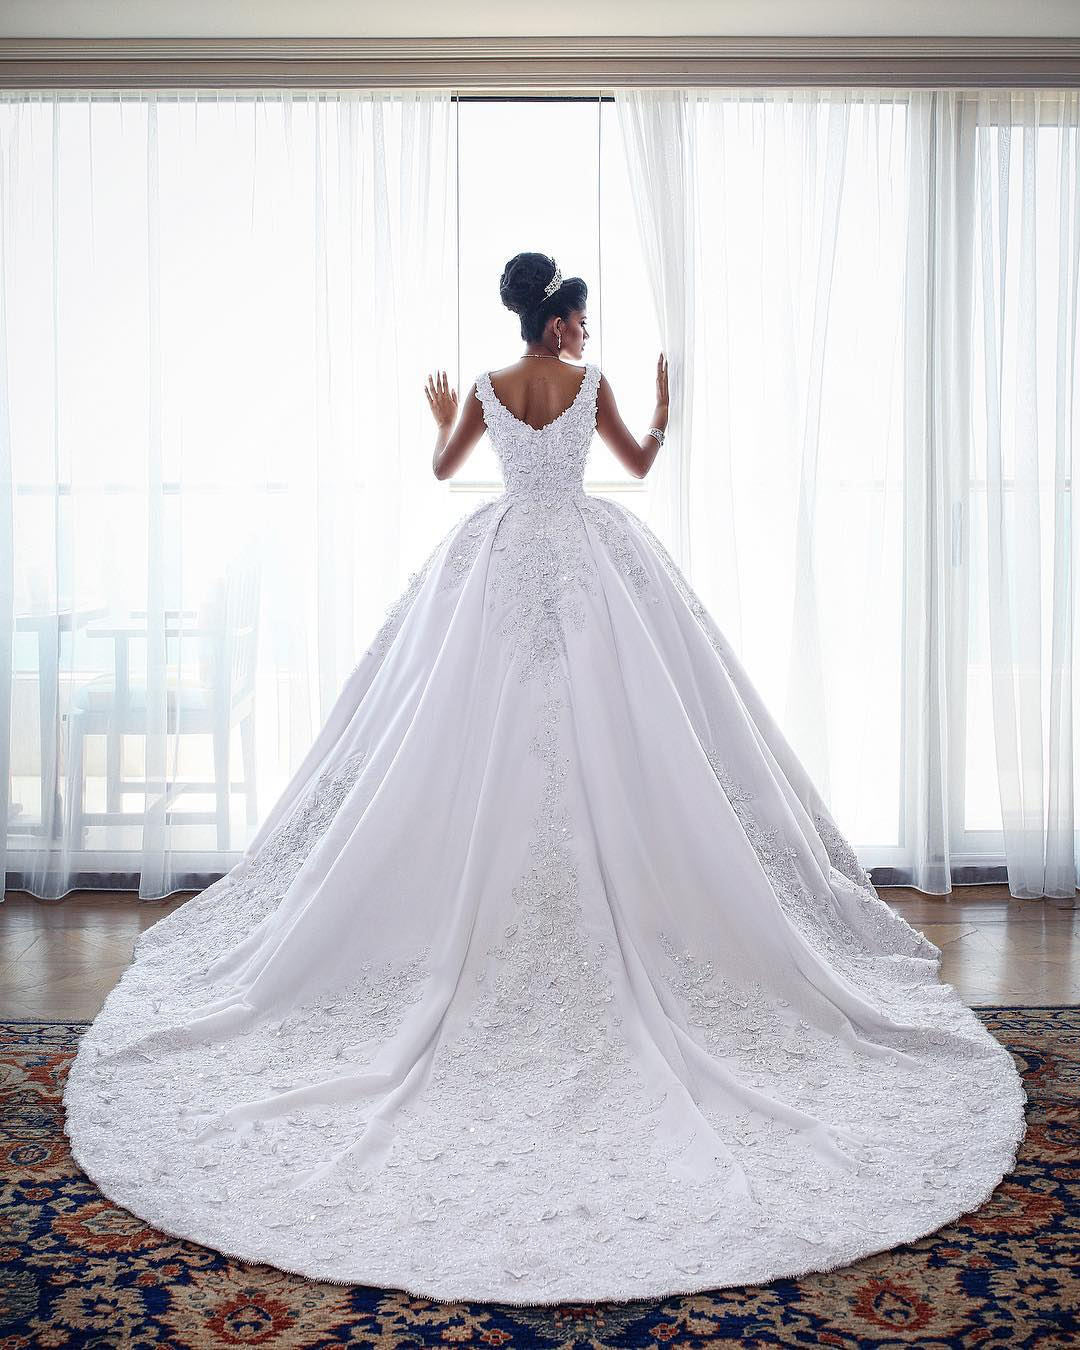 Hier können Sie Luxus Weiße Brautkleider Mit Spitze Online bei babyonlinedress.de. kaufen. Prinzessin Hochzeitskleider Online für Sie zur Hochzeit mit nach maße anfertigen service.